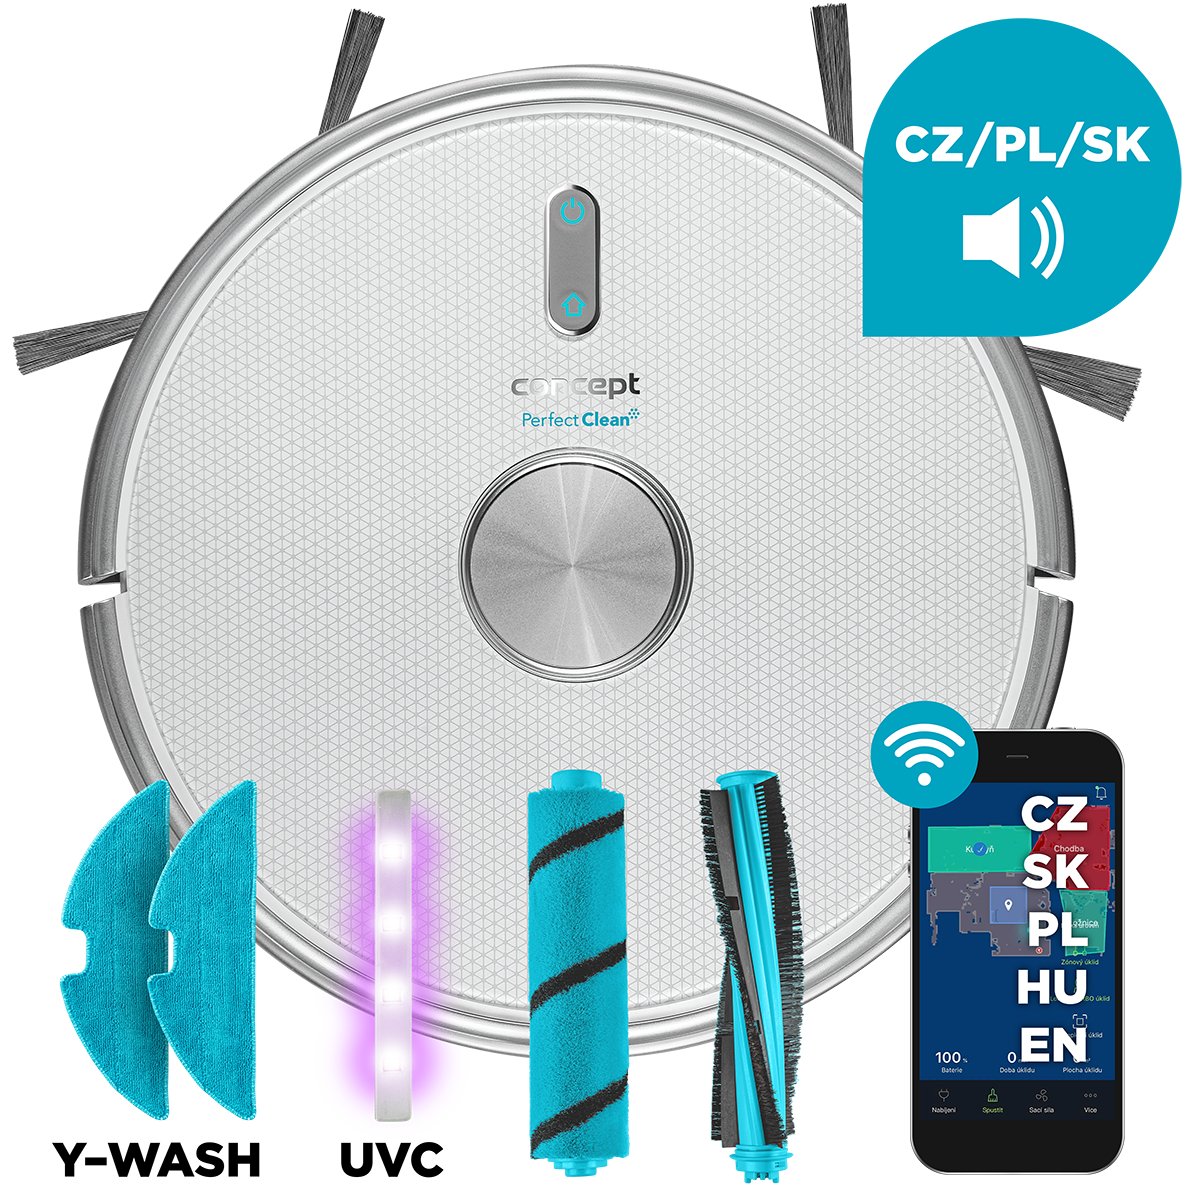 Concept VR3205 3w1 Perfect Clean Laser UVC Y-wash